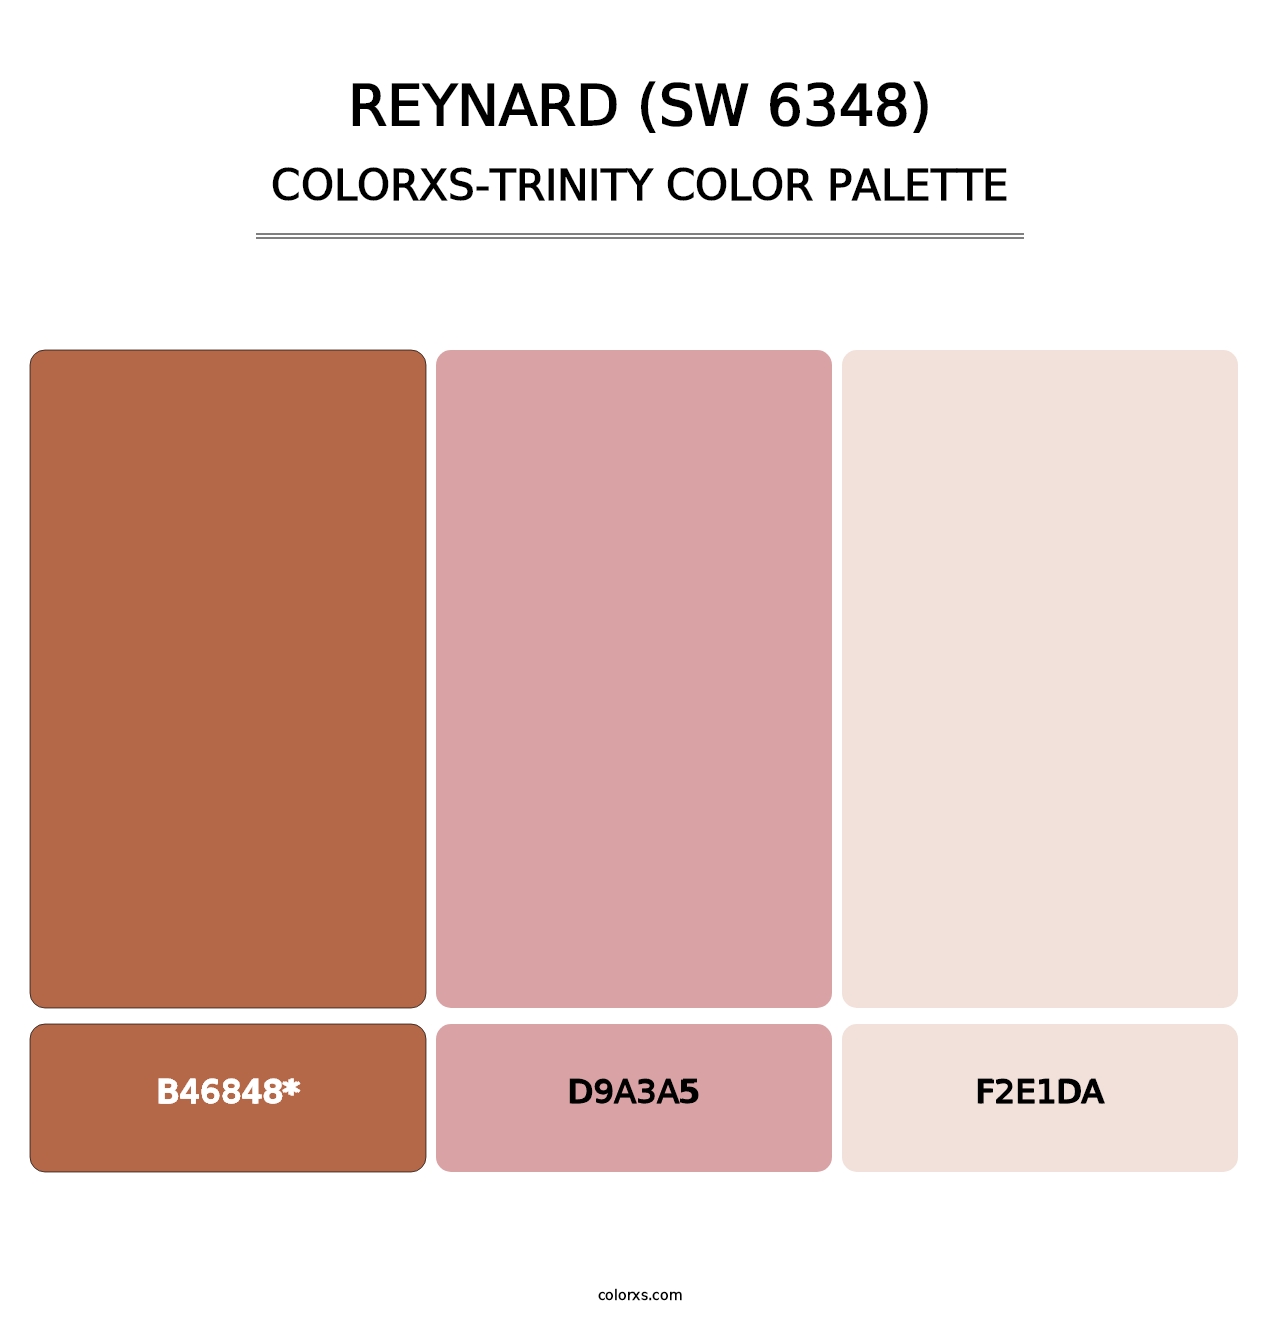 Reynard (SW 6348) - Colorxs Trinity Palette